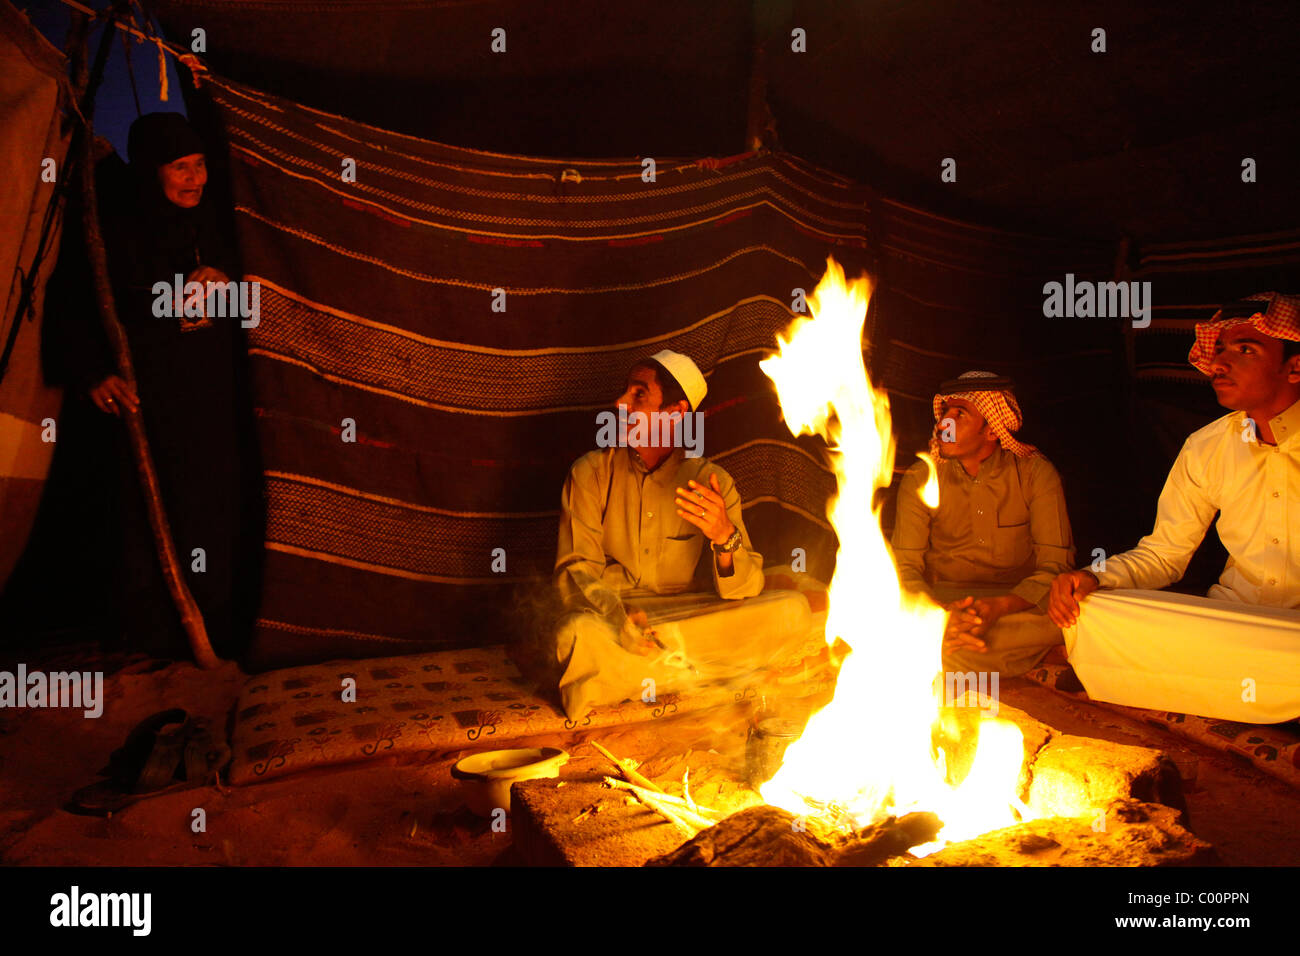 Los beduinos sentados alrededor del fuego en su campamento, Wadi Rum, Jordania. Foto de stock